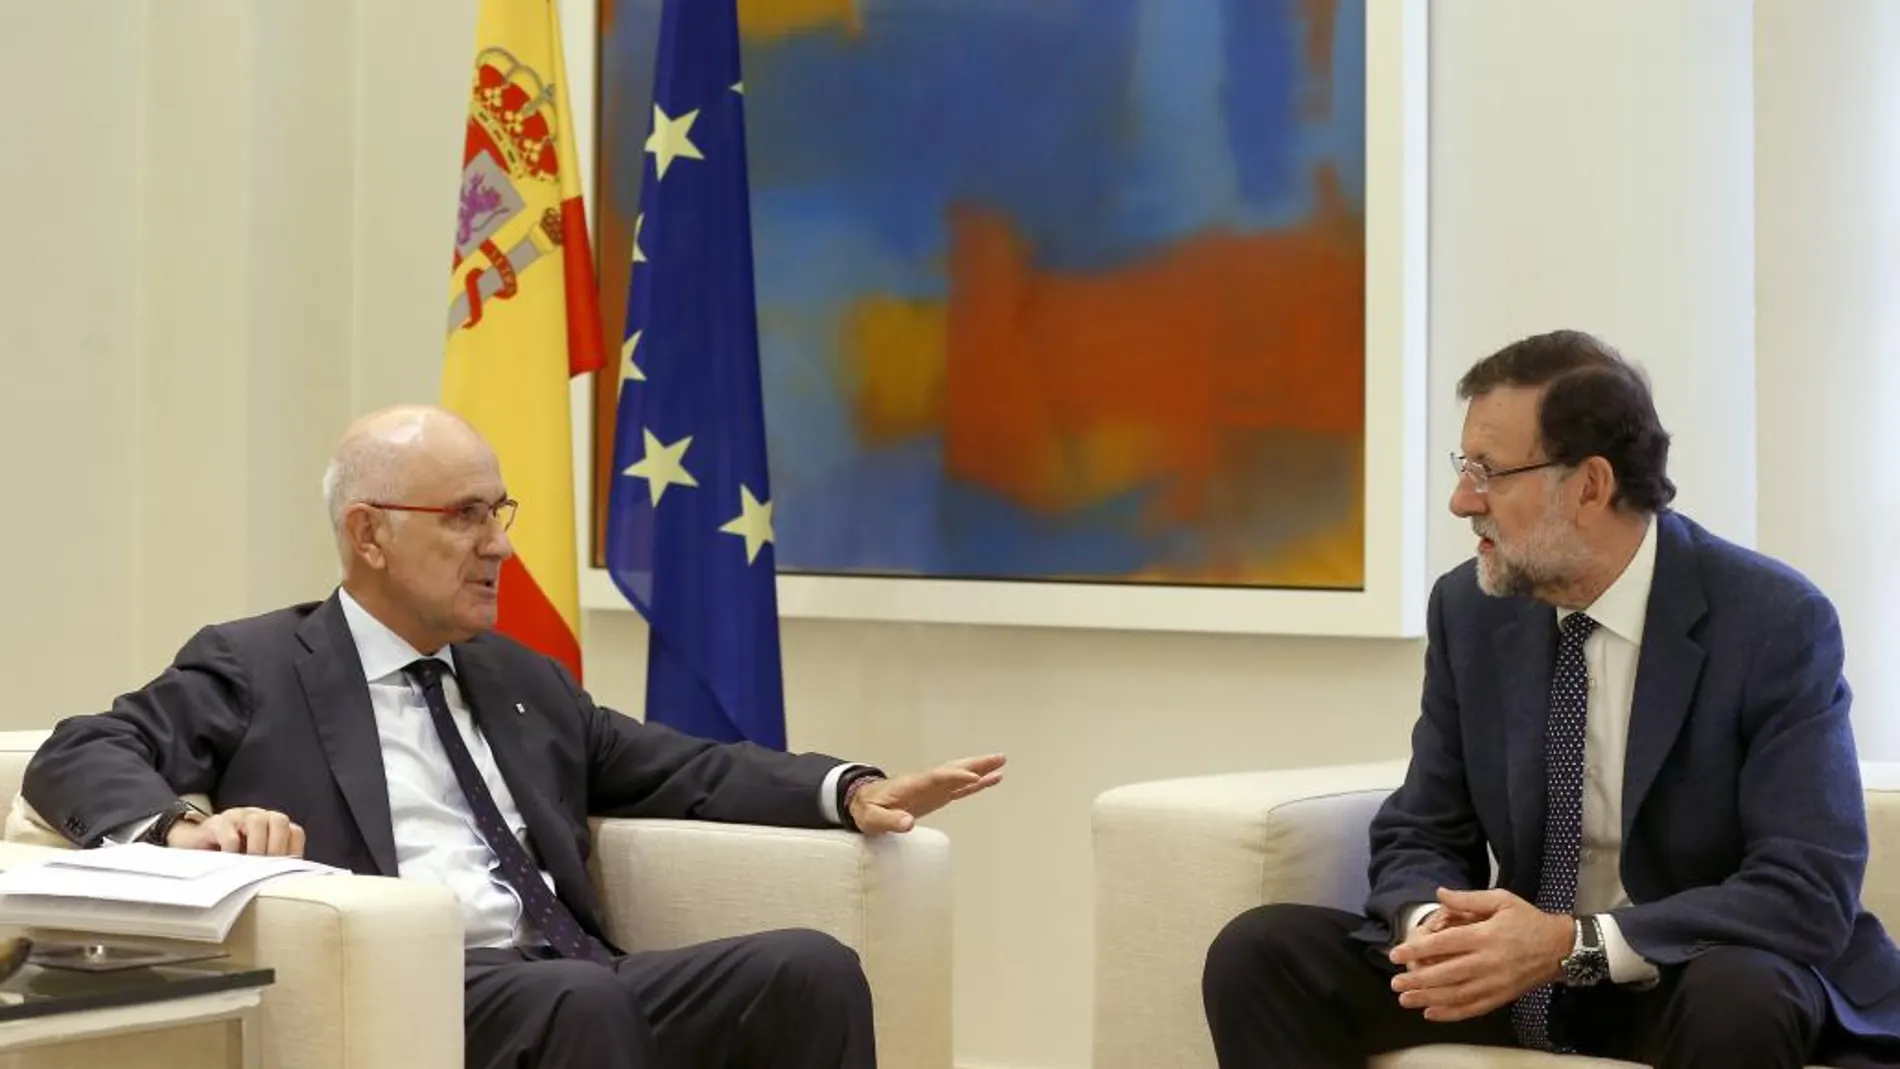 El presidente del Gobierno, Mariano Rajoy, (dch), ha recibido hoy en el Palacio de la Moncloa al líder de Uniò, Josep Antoni Duran Lleida